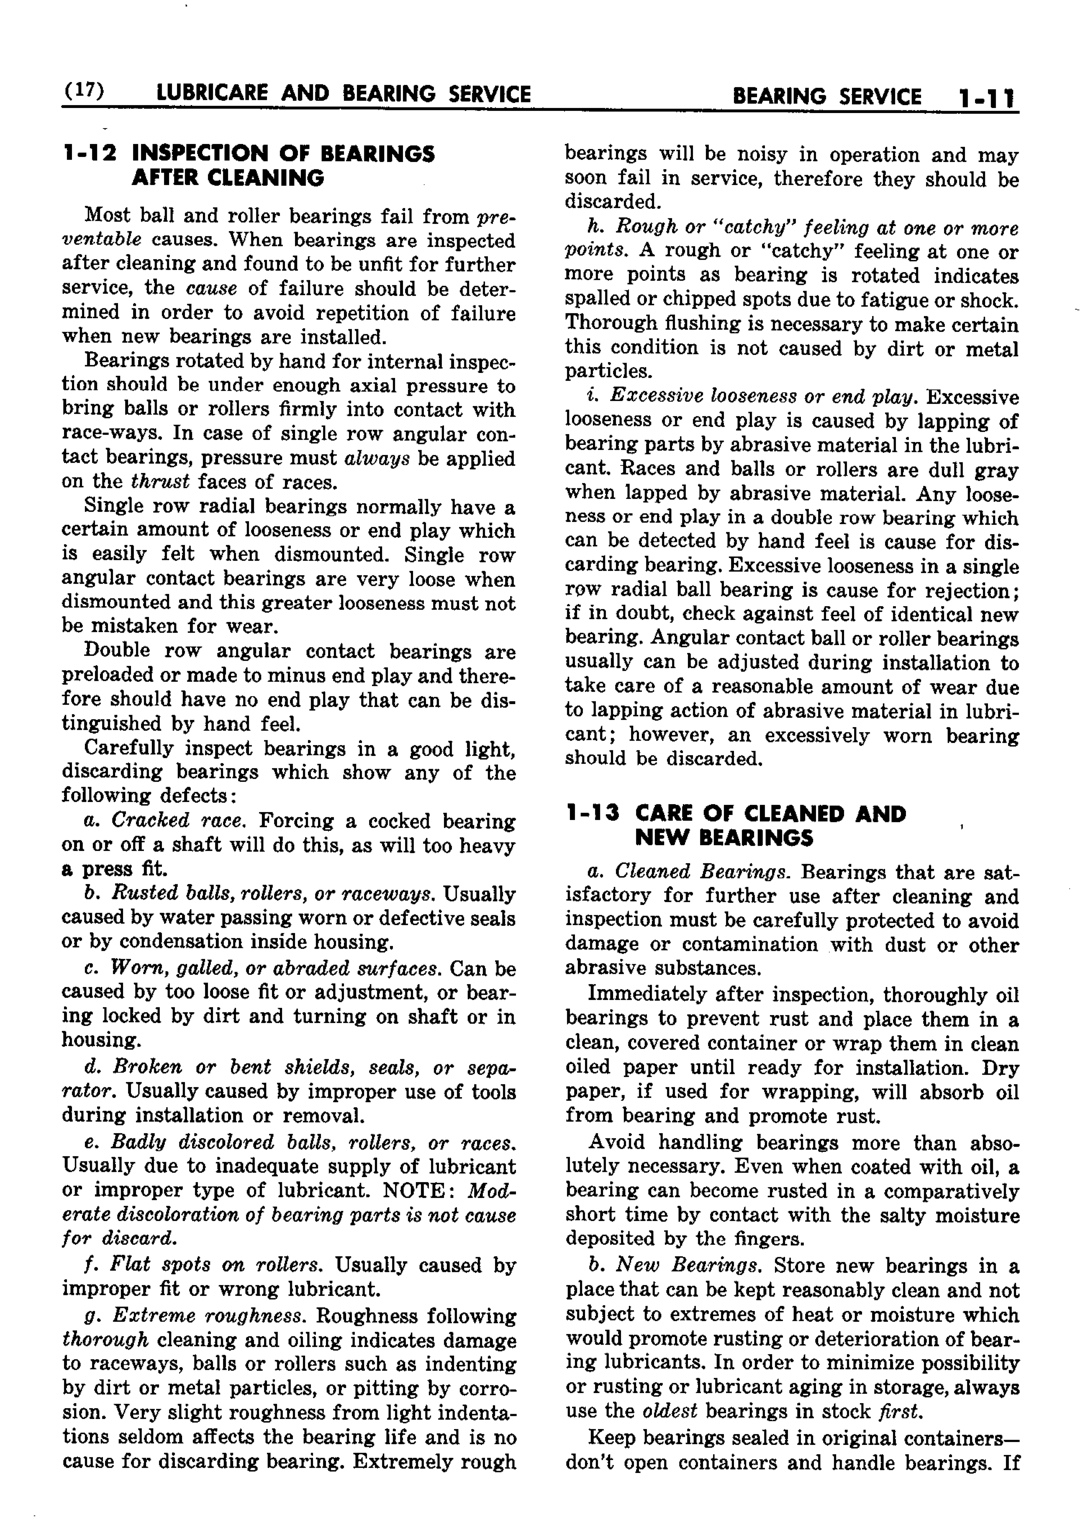 n_02 1952 Buick Shop Manual - Lubricare-011-011.jpg